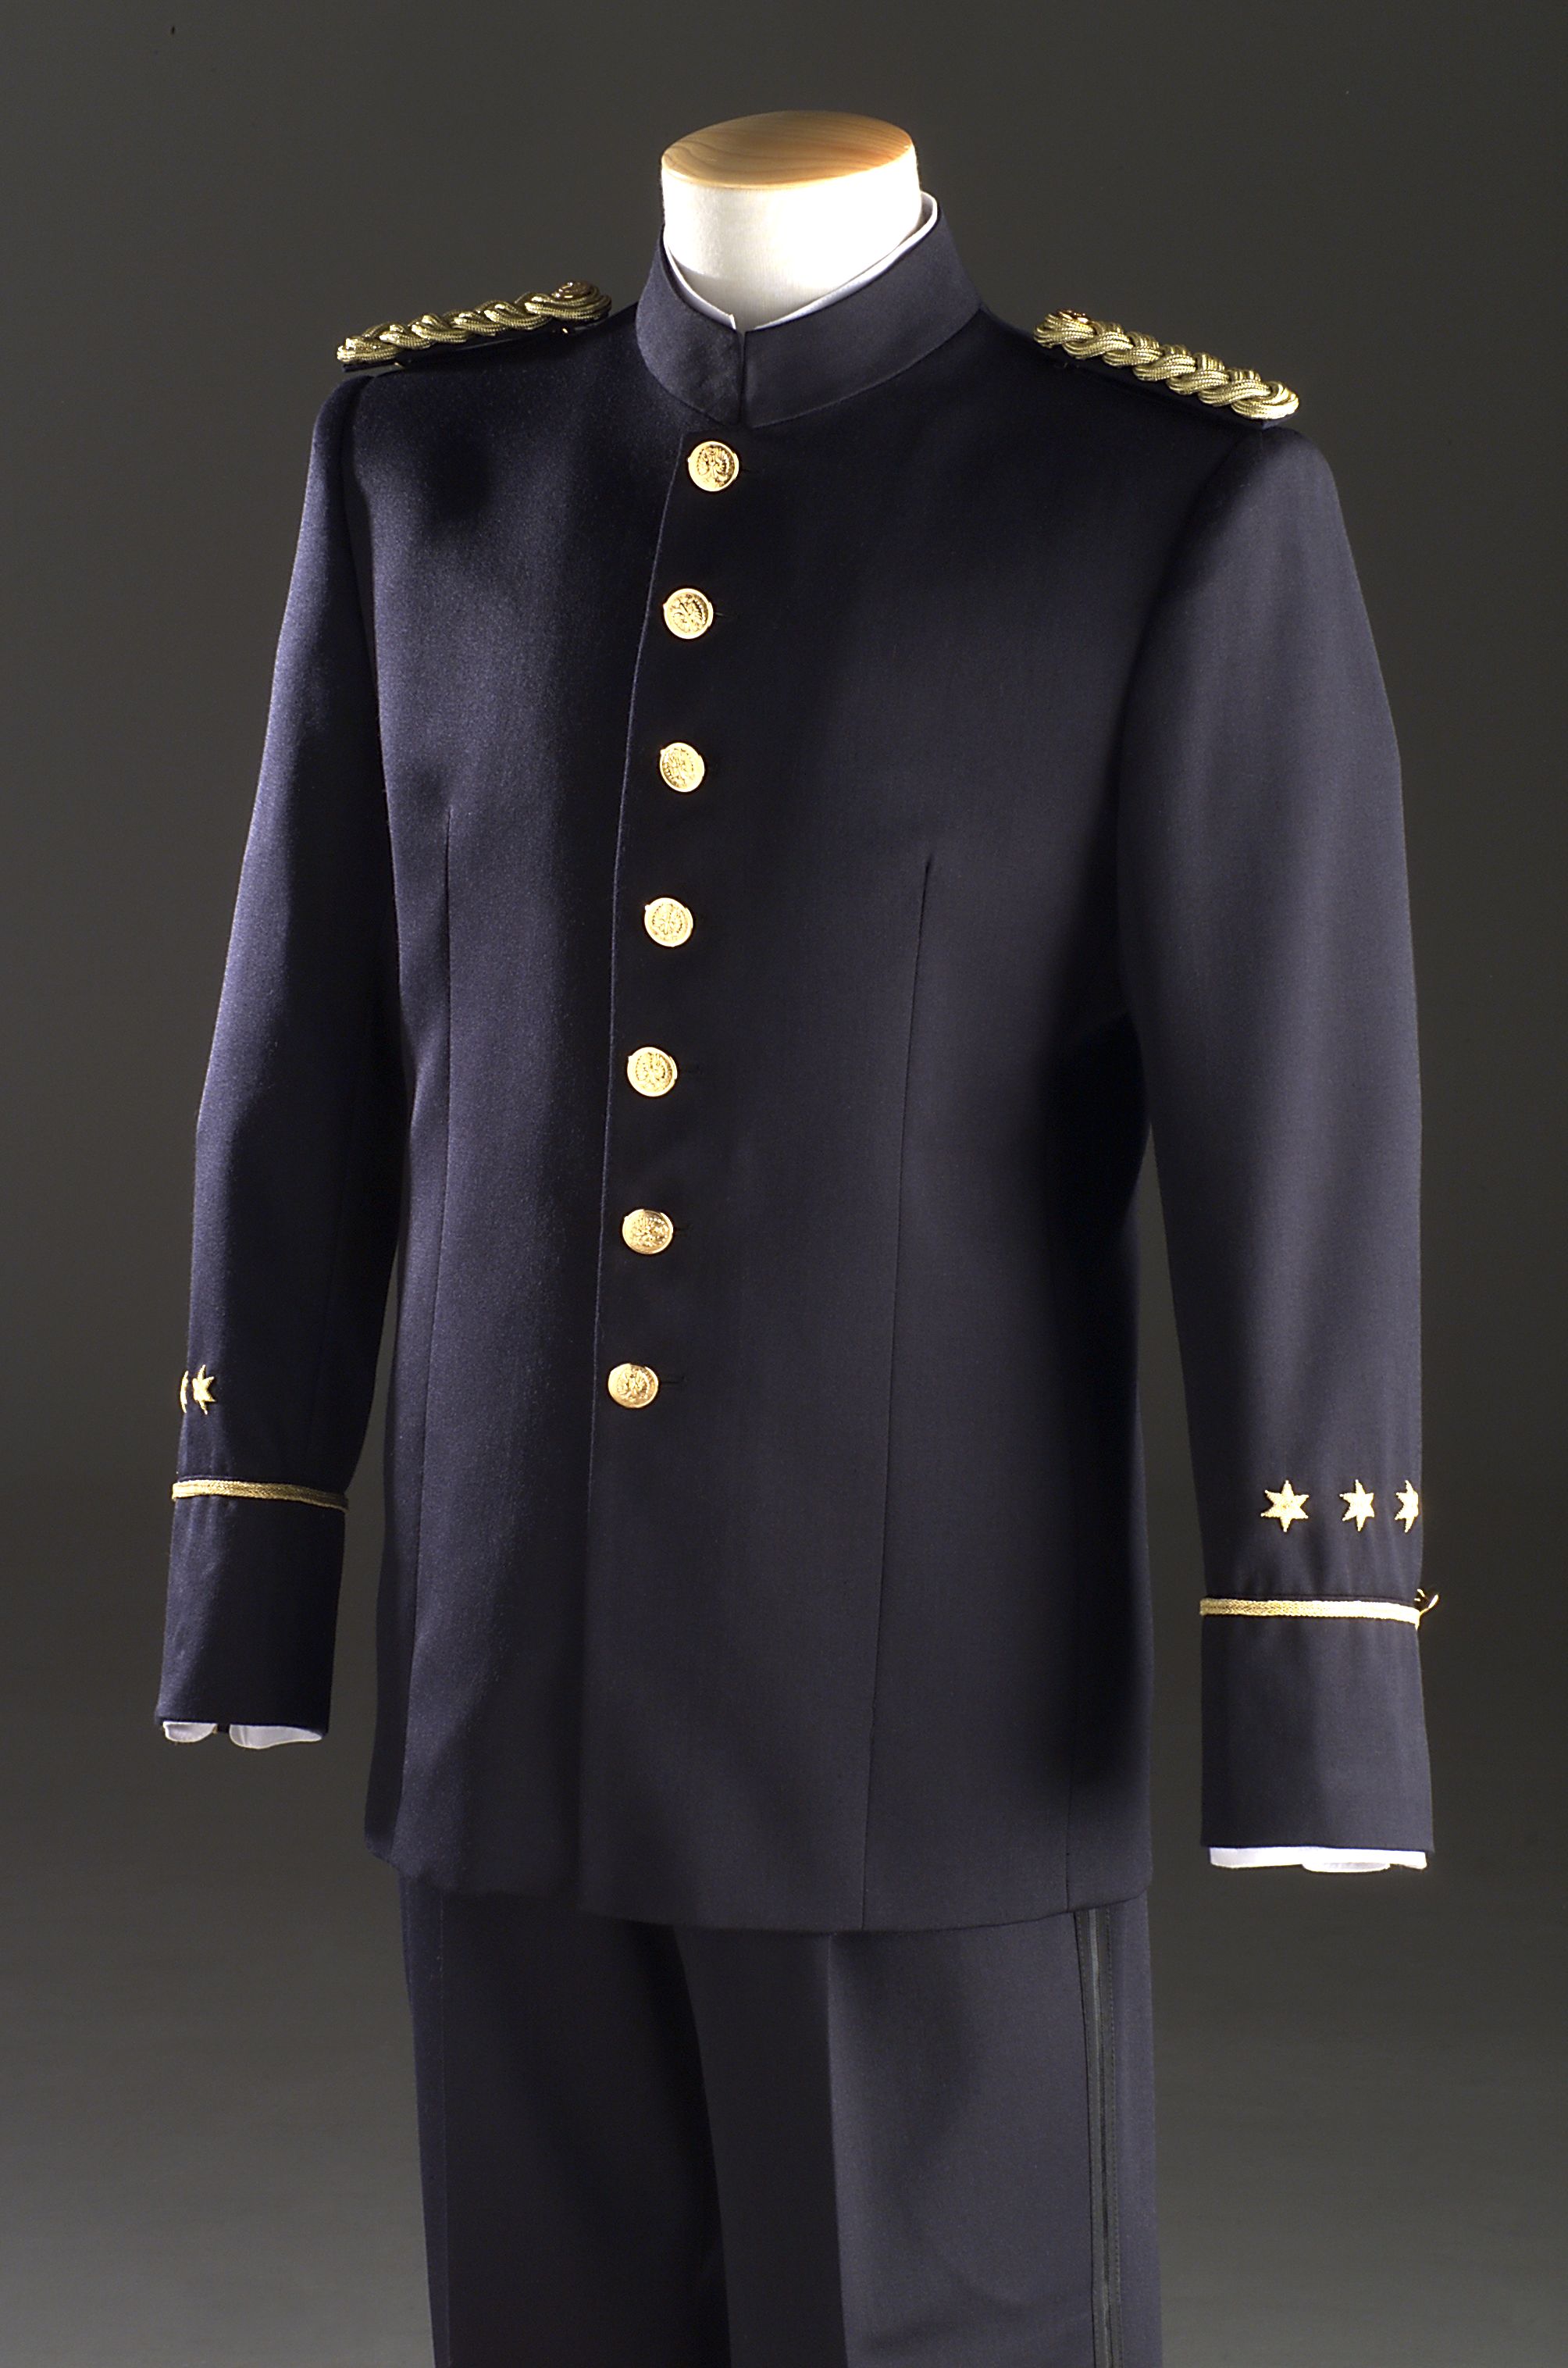 Confección de uniformes para los Cuerpos de Seguridad del Estado